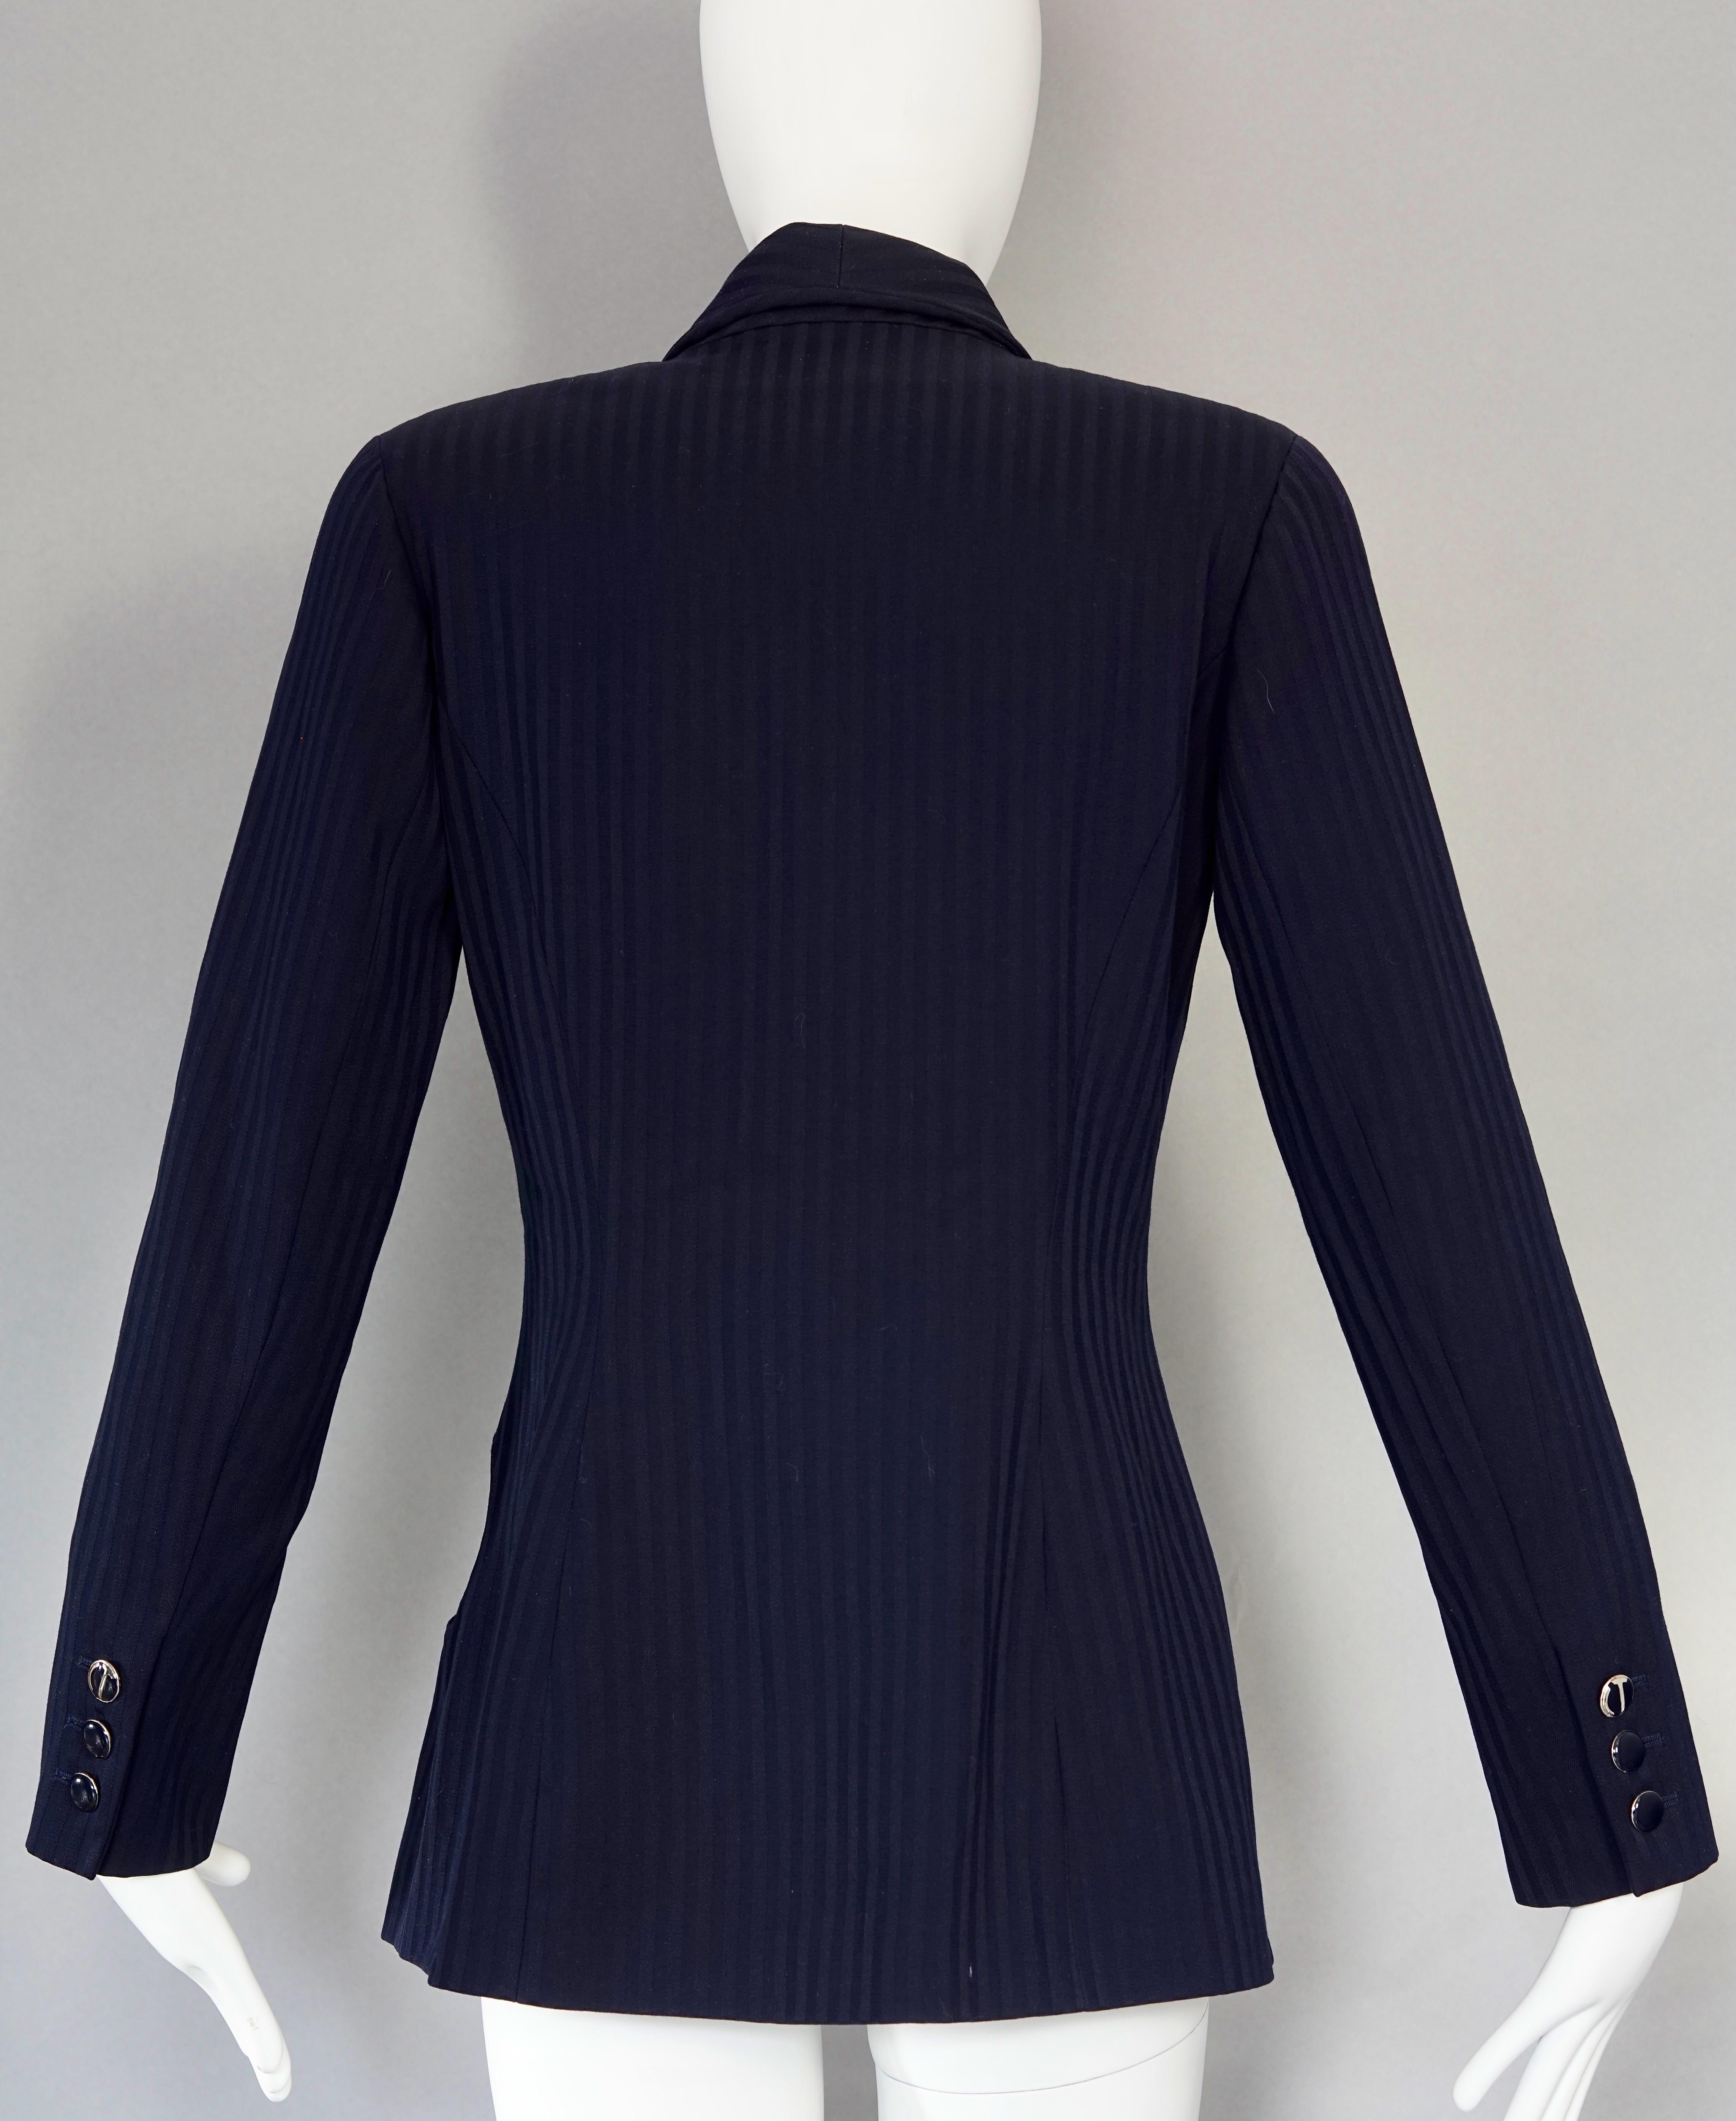 Vintage CHANTAL THOMASS Irregular Openwork Self Stripe Navy Blue Blazer Jacket For Sale 1